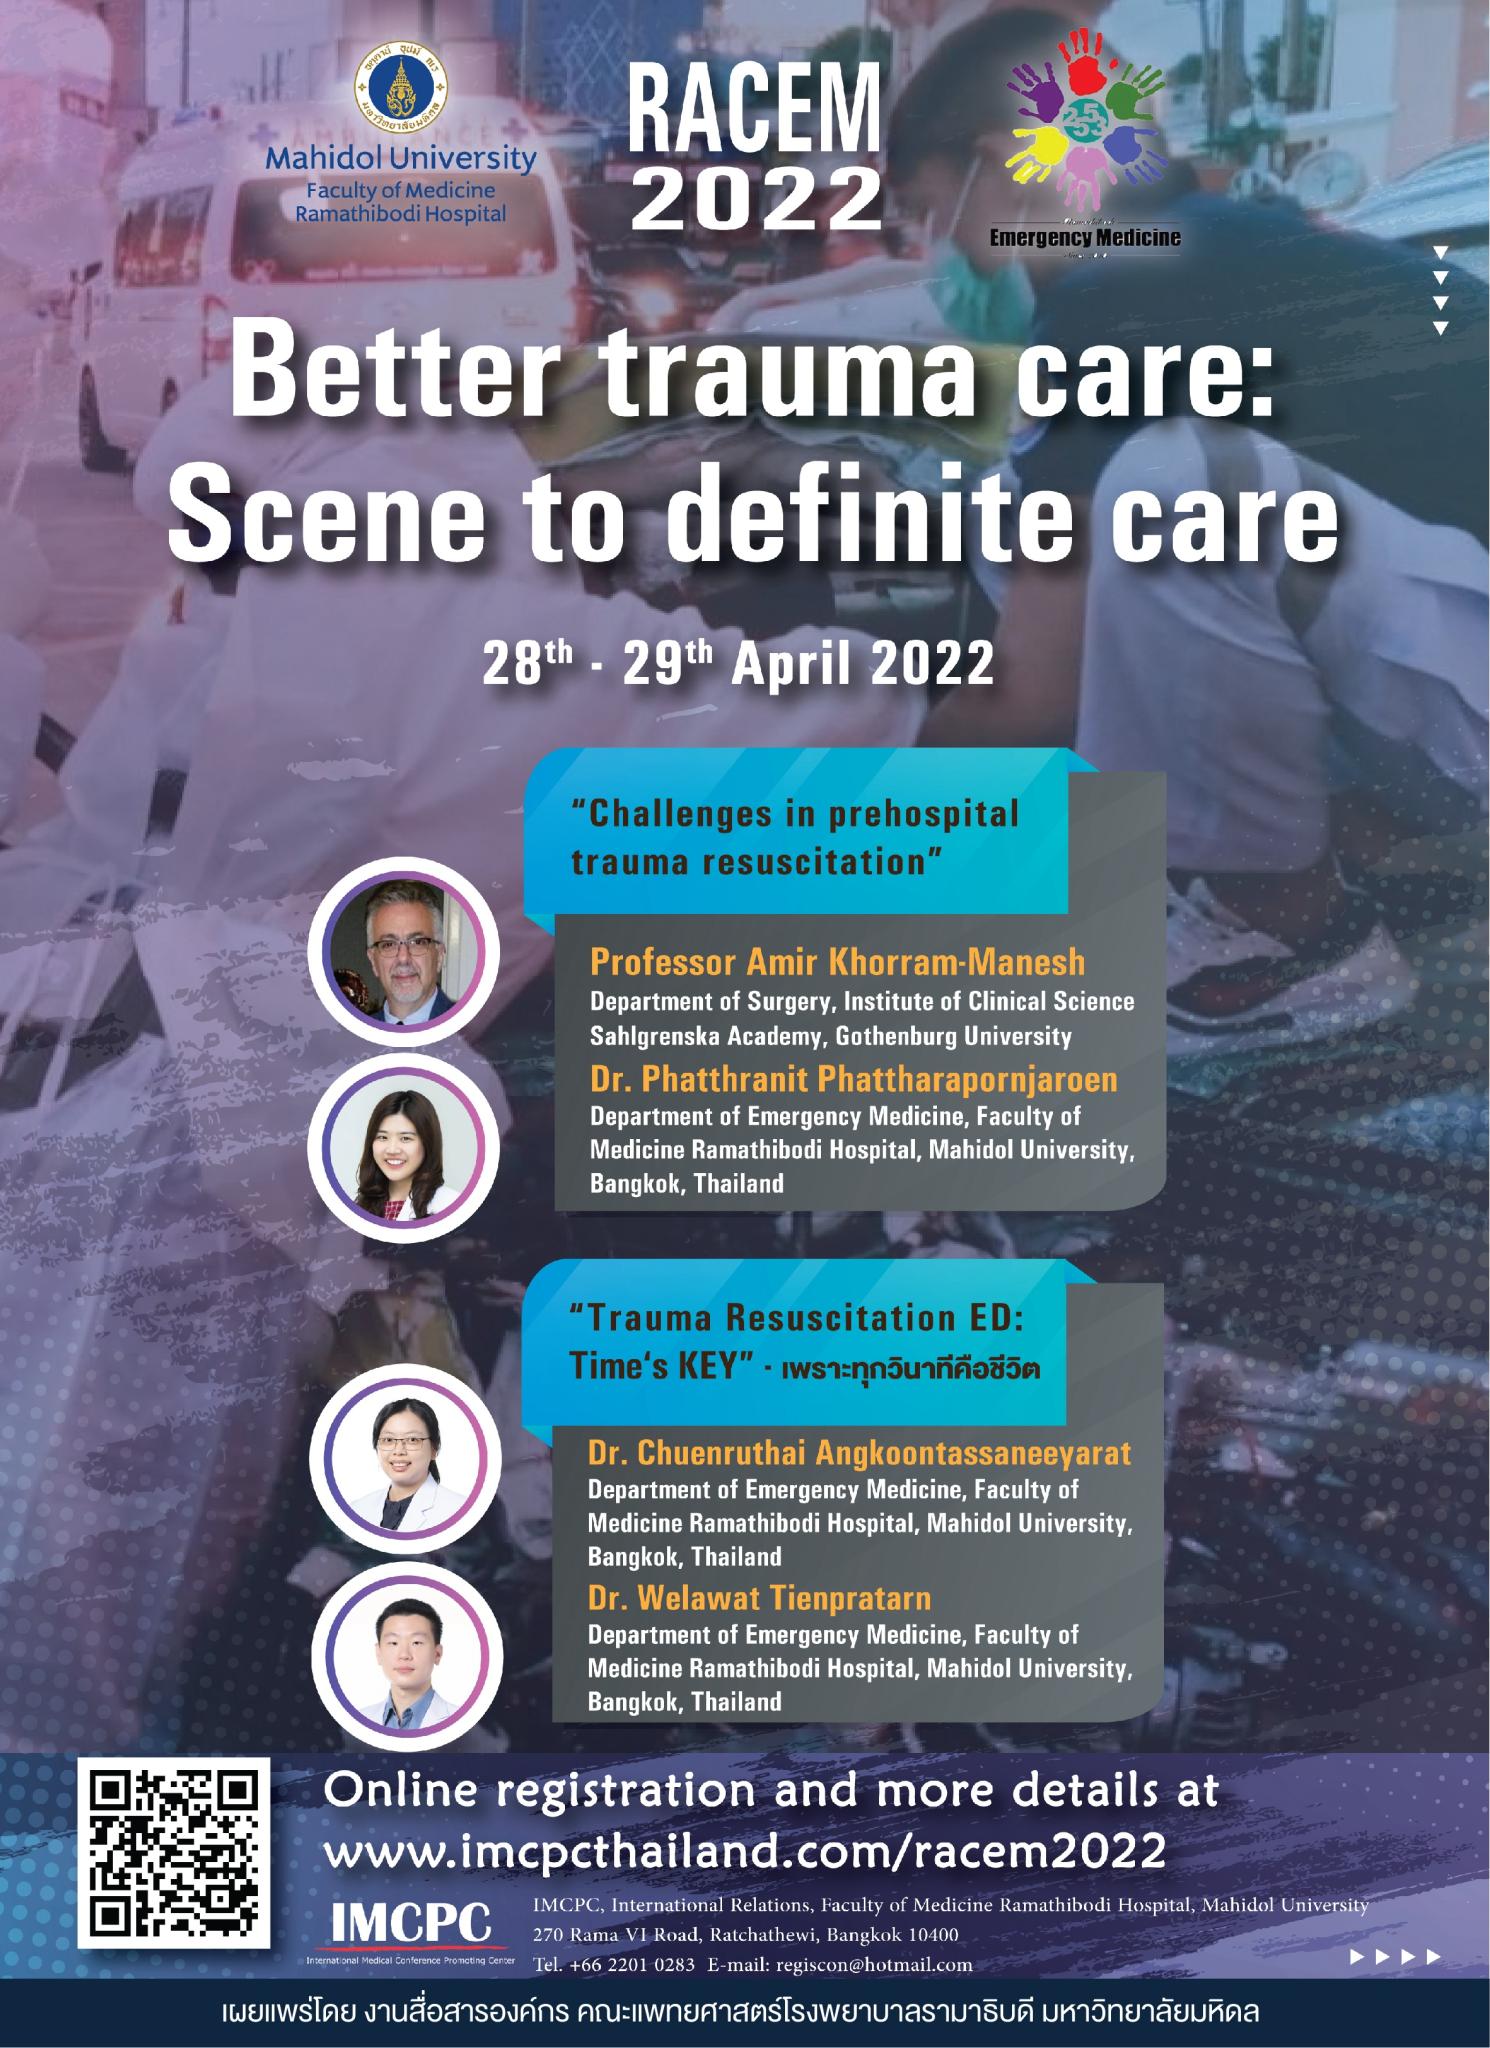 Better trauma care: Scene to definite care